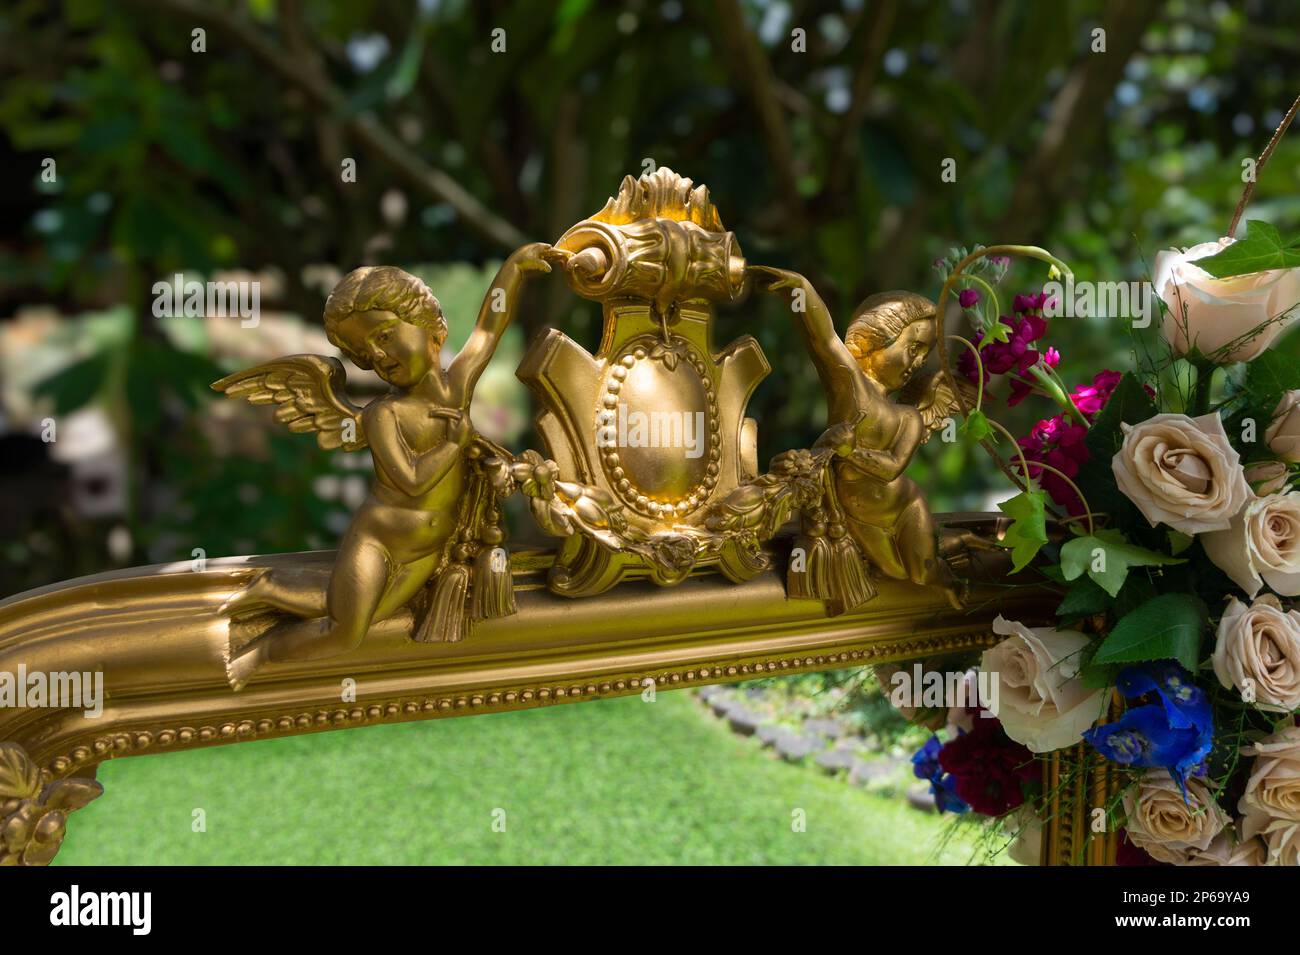 Particolare degli angeli dorati di un antico specchio ornato di rose nel mezzo del giardino che riflette l'erba con uno sfondo fuori fuoco tre Foto Stock